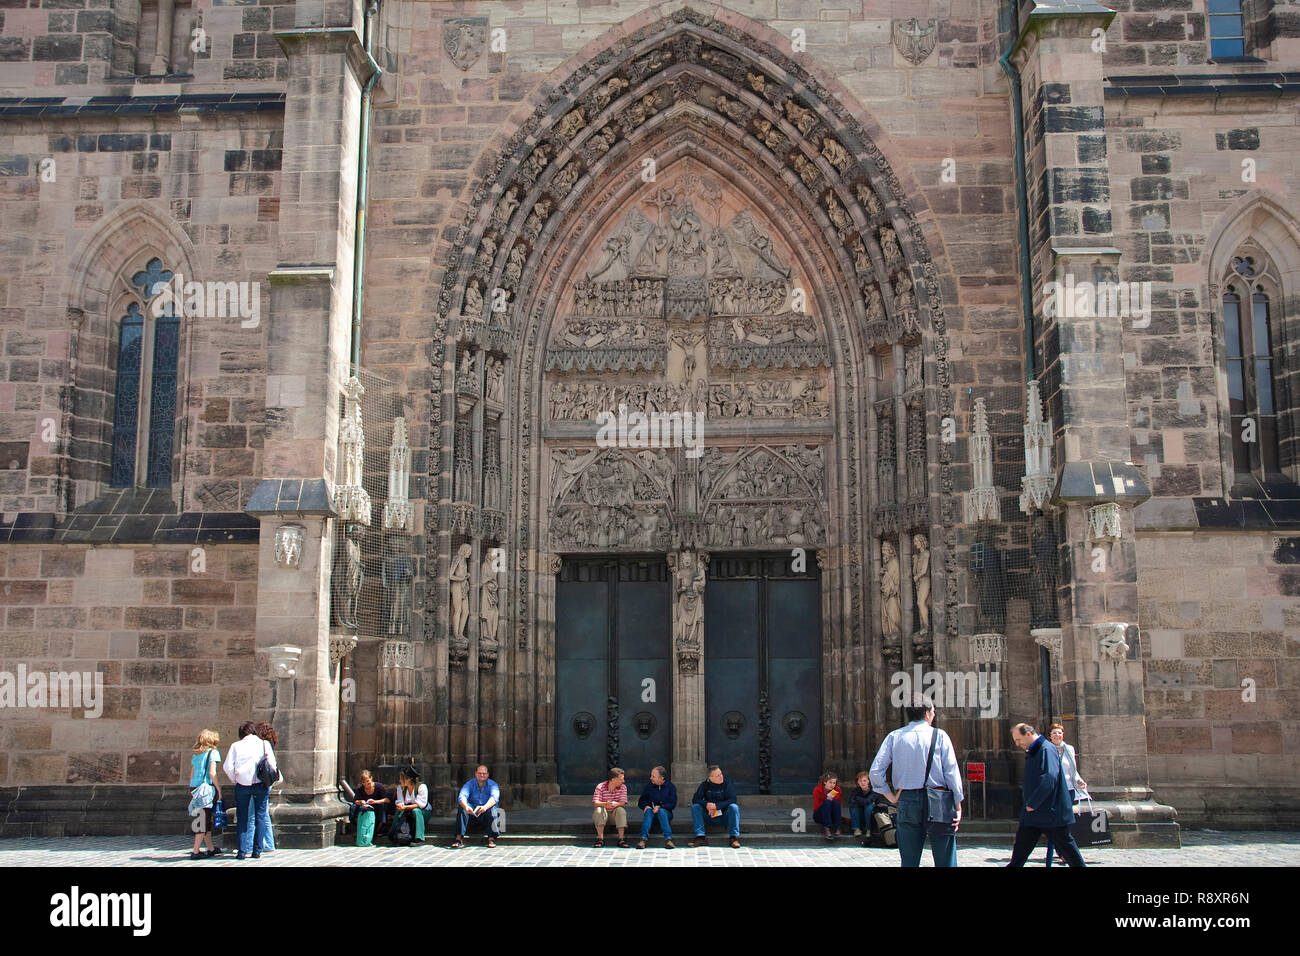 Portail, entrée principale de l'église Saint-Laurent à vieille ville, Nuremberg, Bavière, Allemagne, Europe Banque D'Images